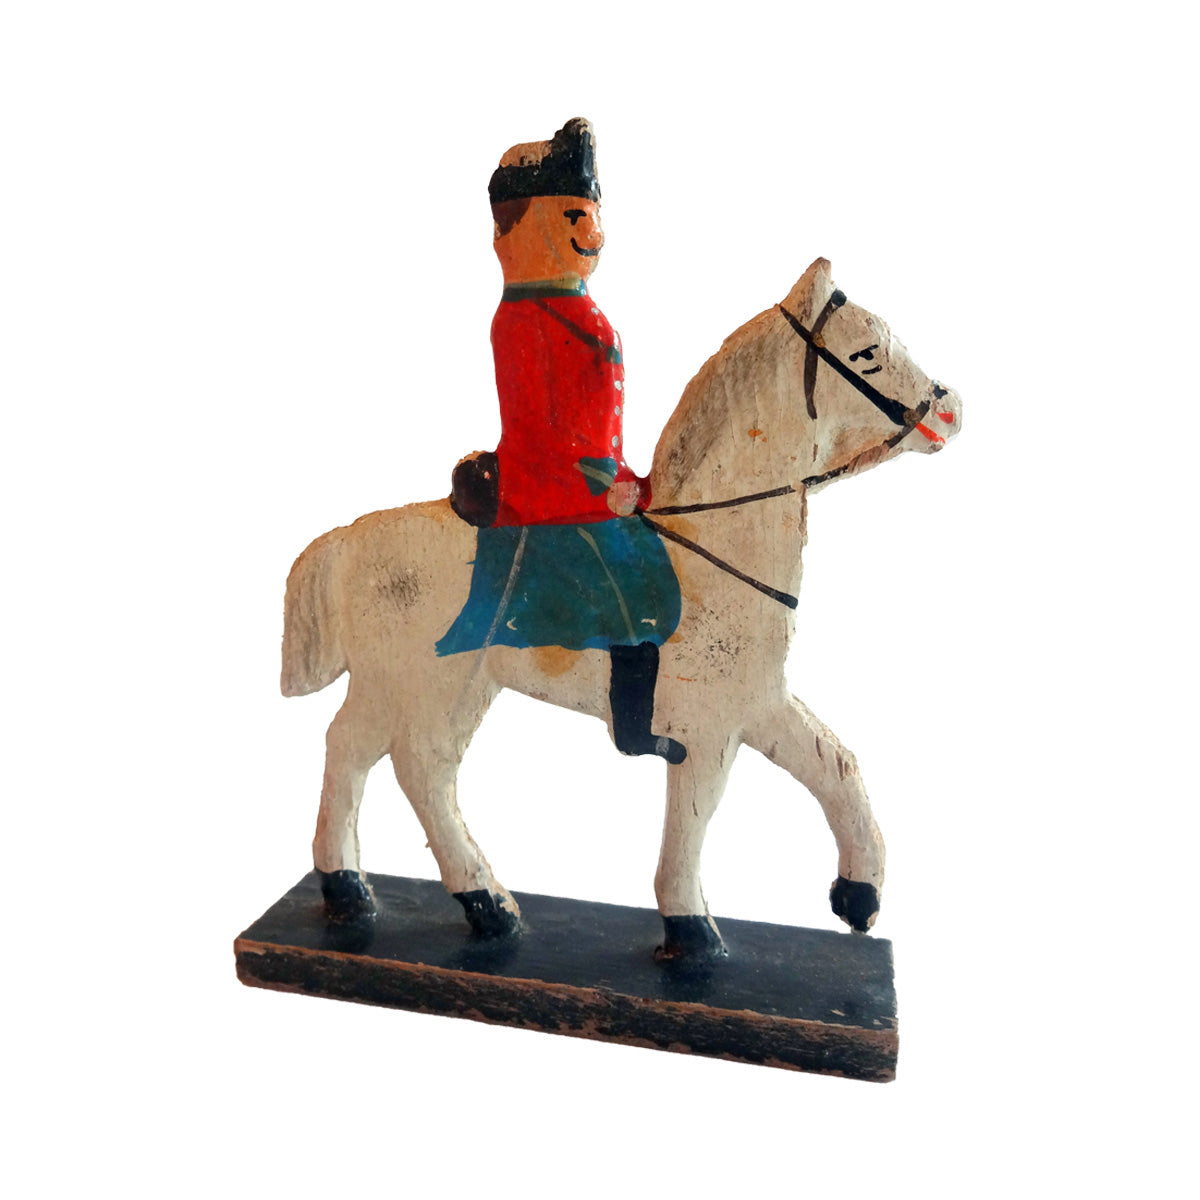 Legetøjsfigur forestillende dansk soldat riddende på hest